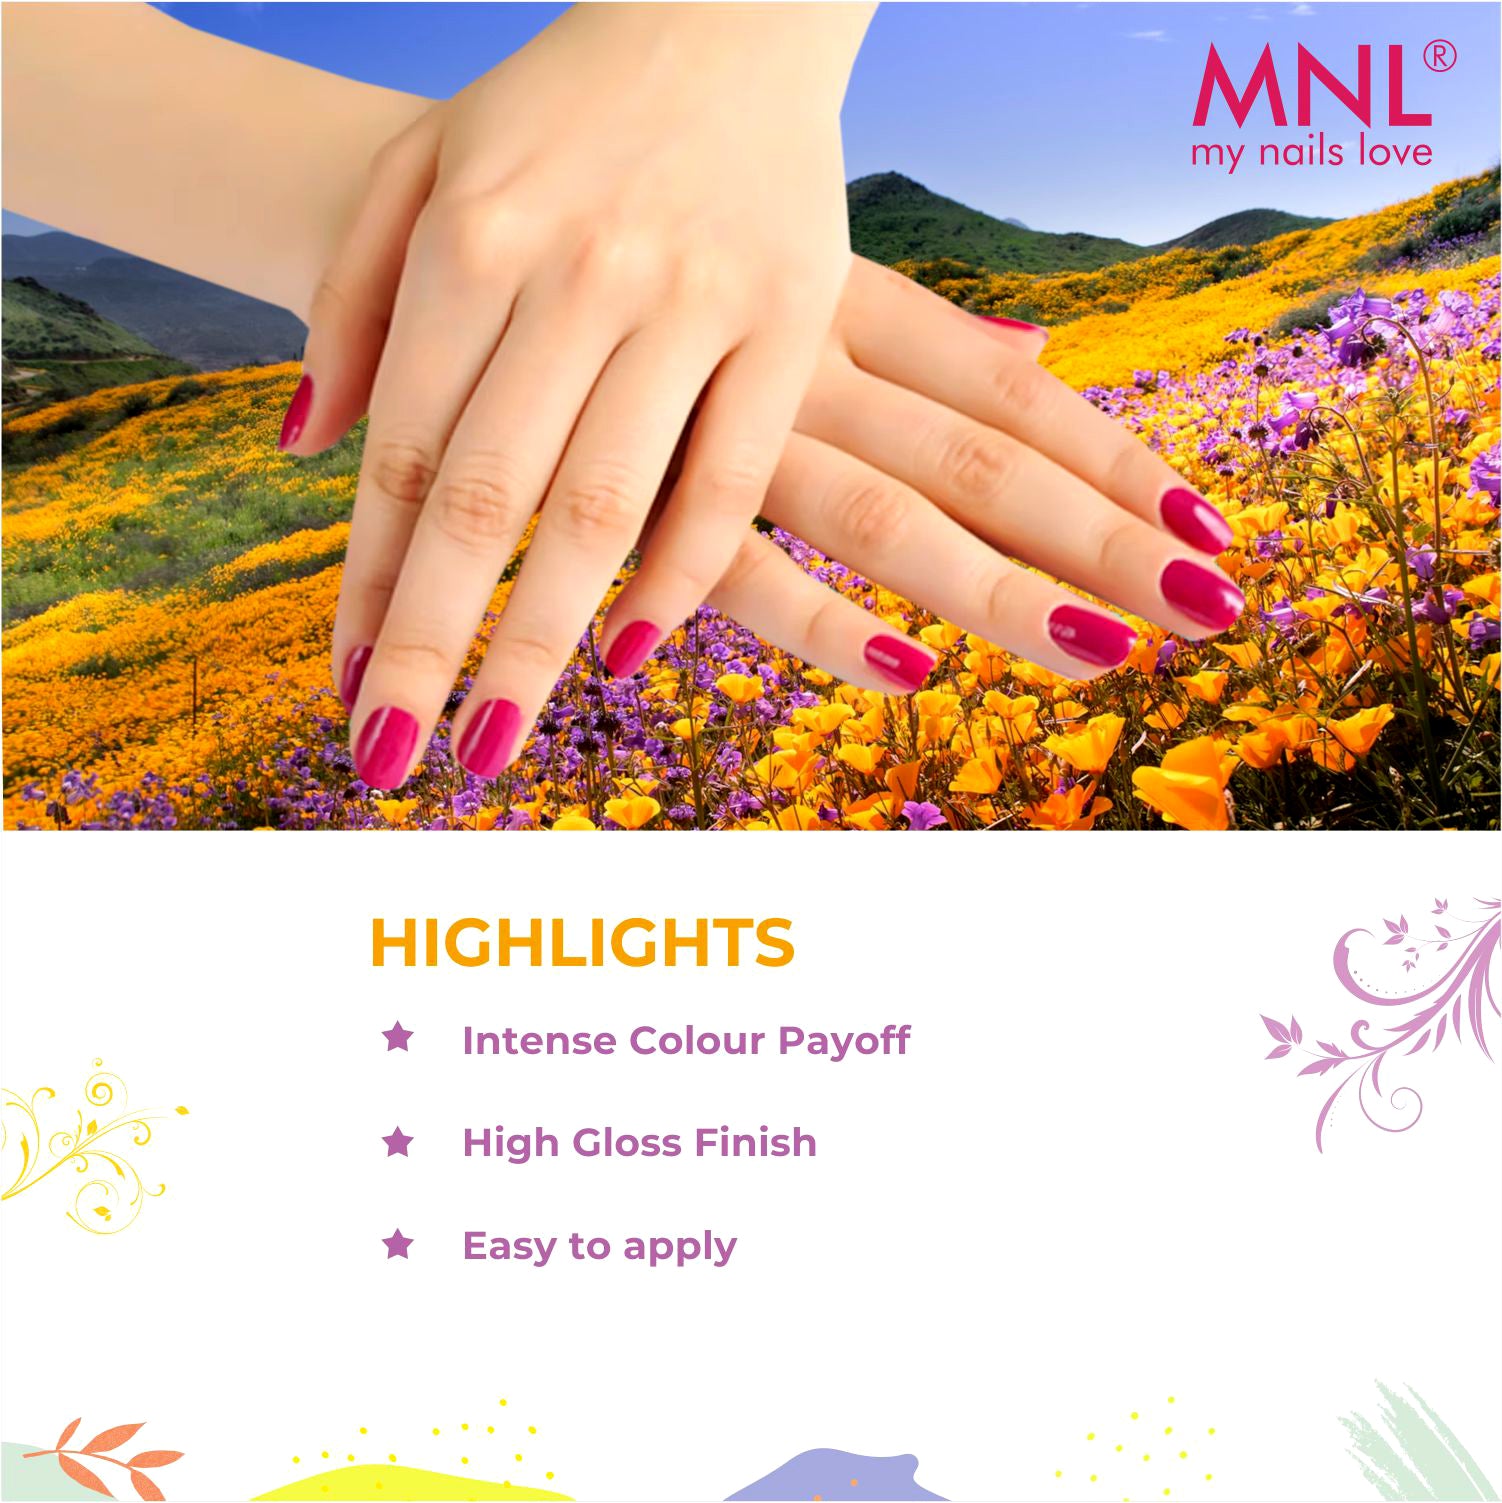 MNL Glossy Mini Nail Polish Set of 10 - Pastel Paradise